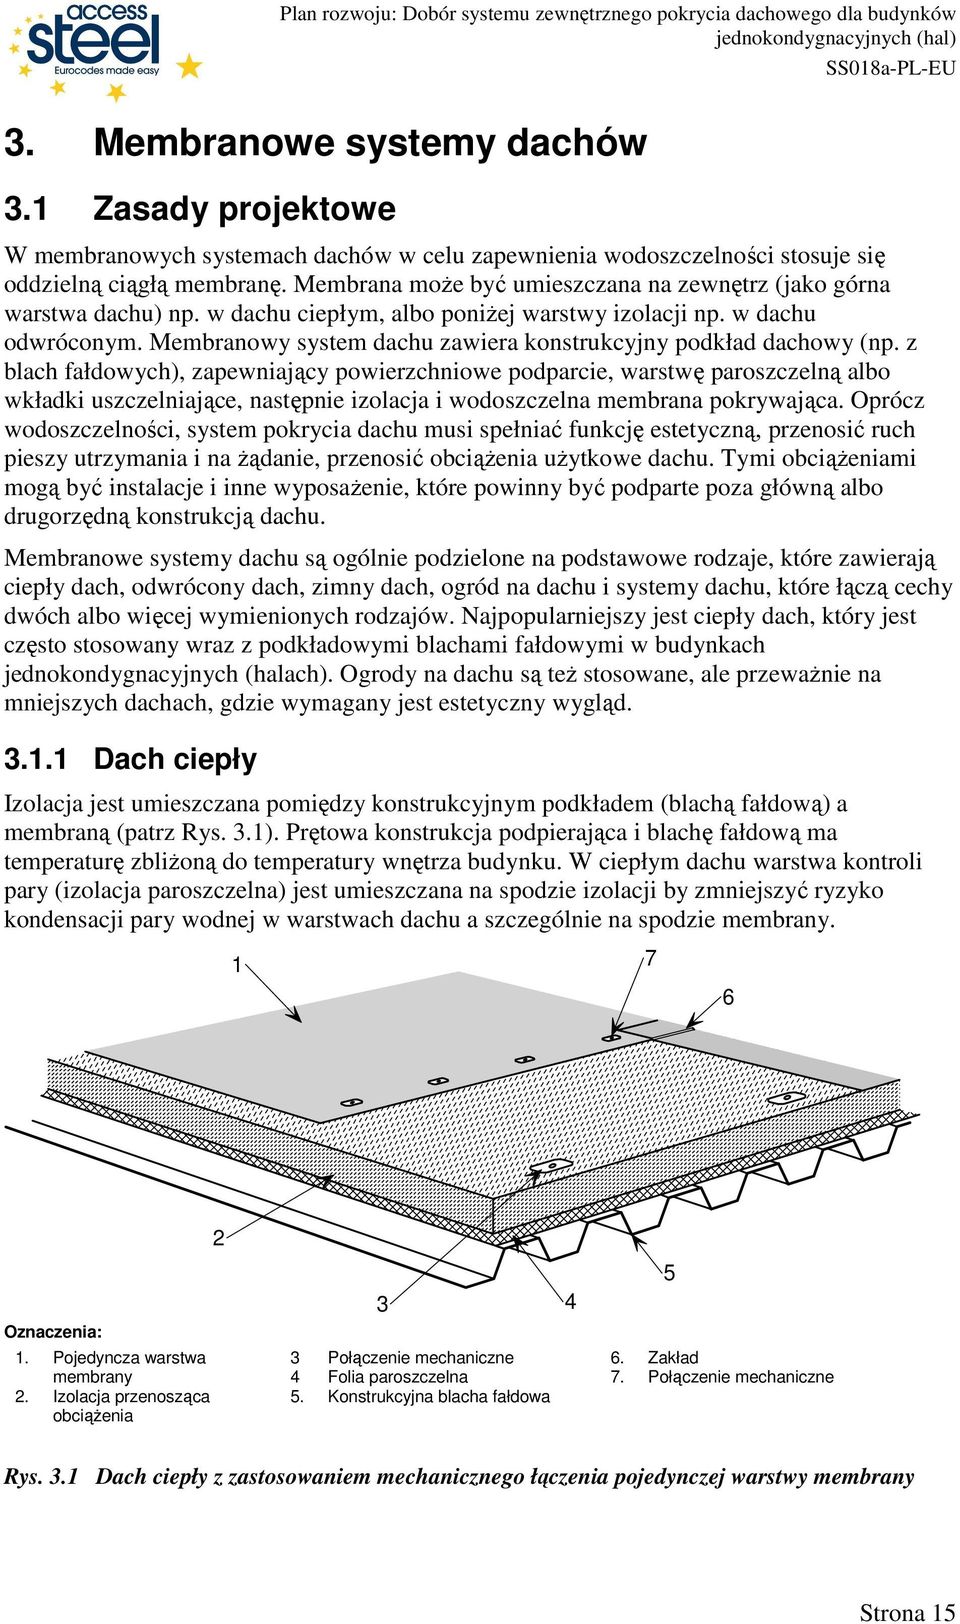 Membranowy system dachu zawiera konstrukcyjny podkład dachowy (np.